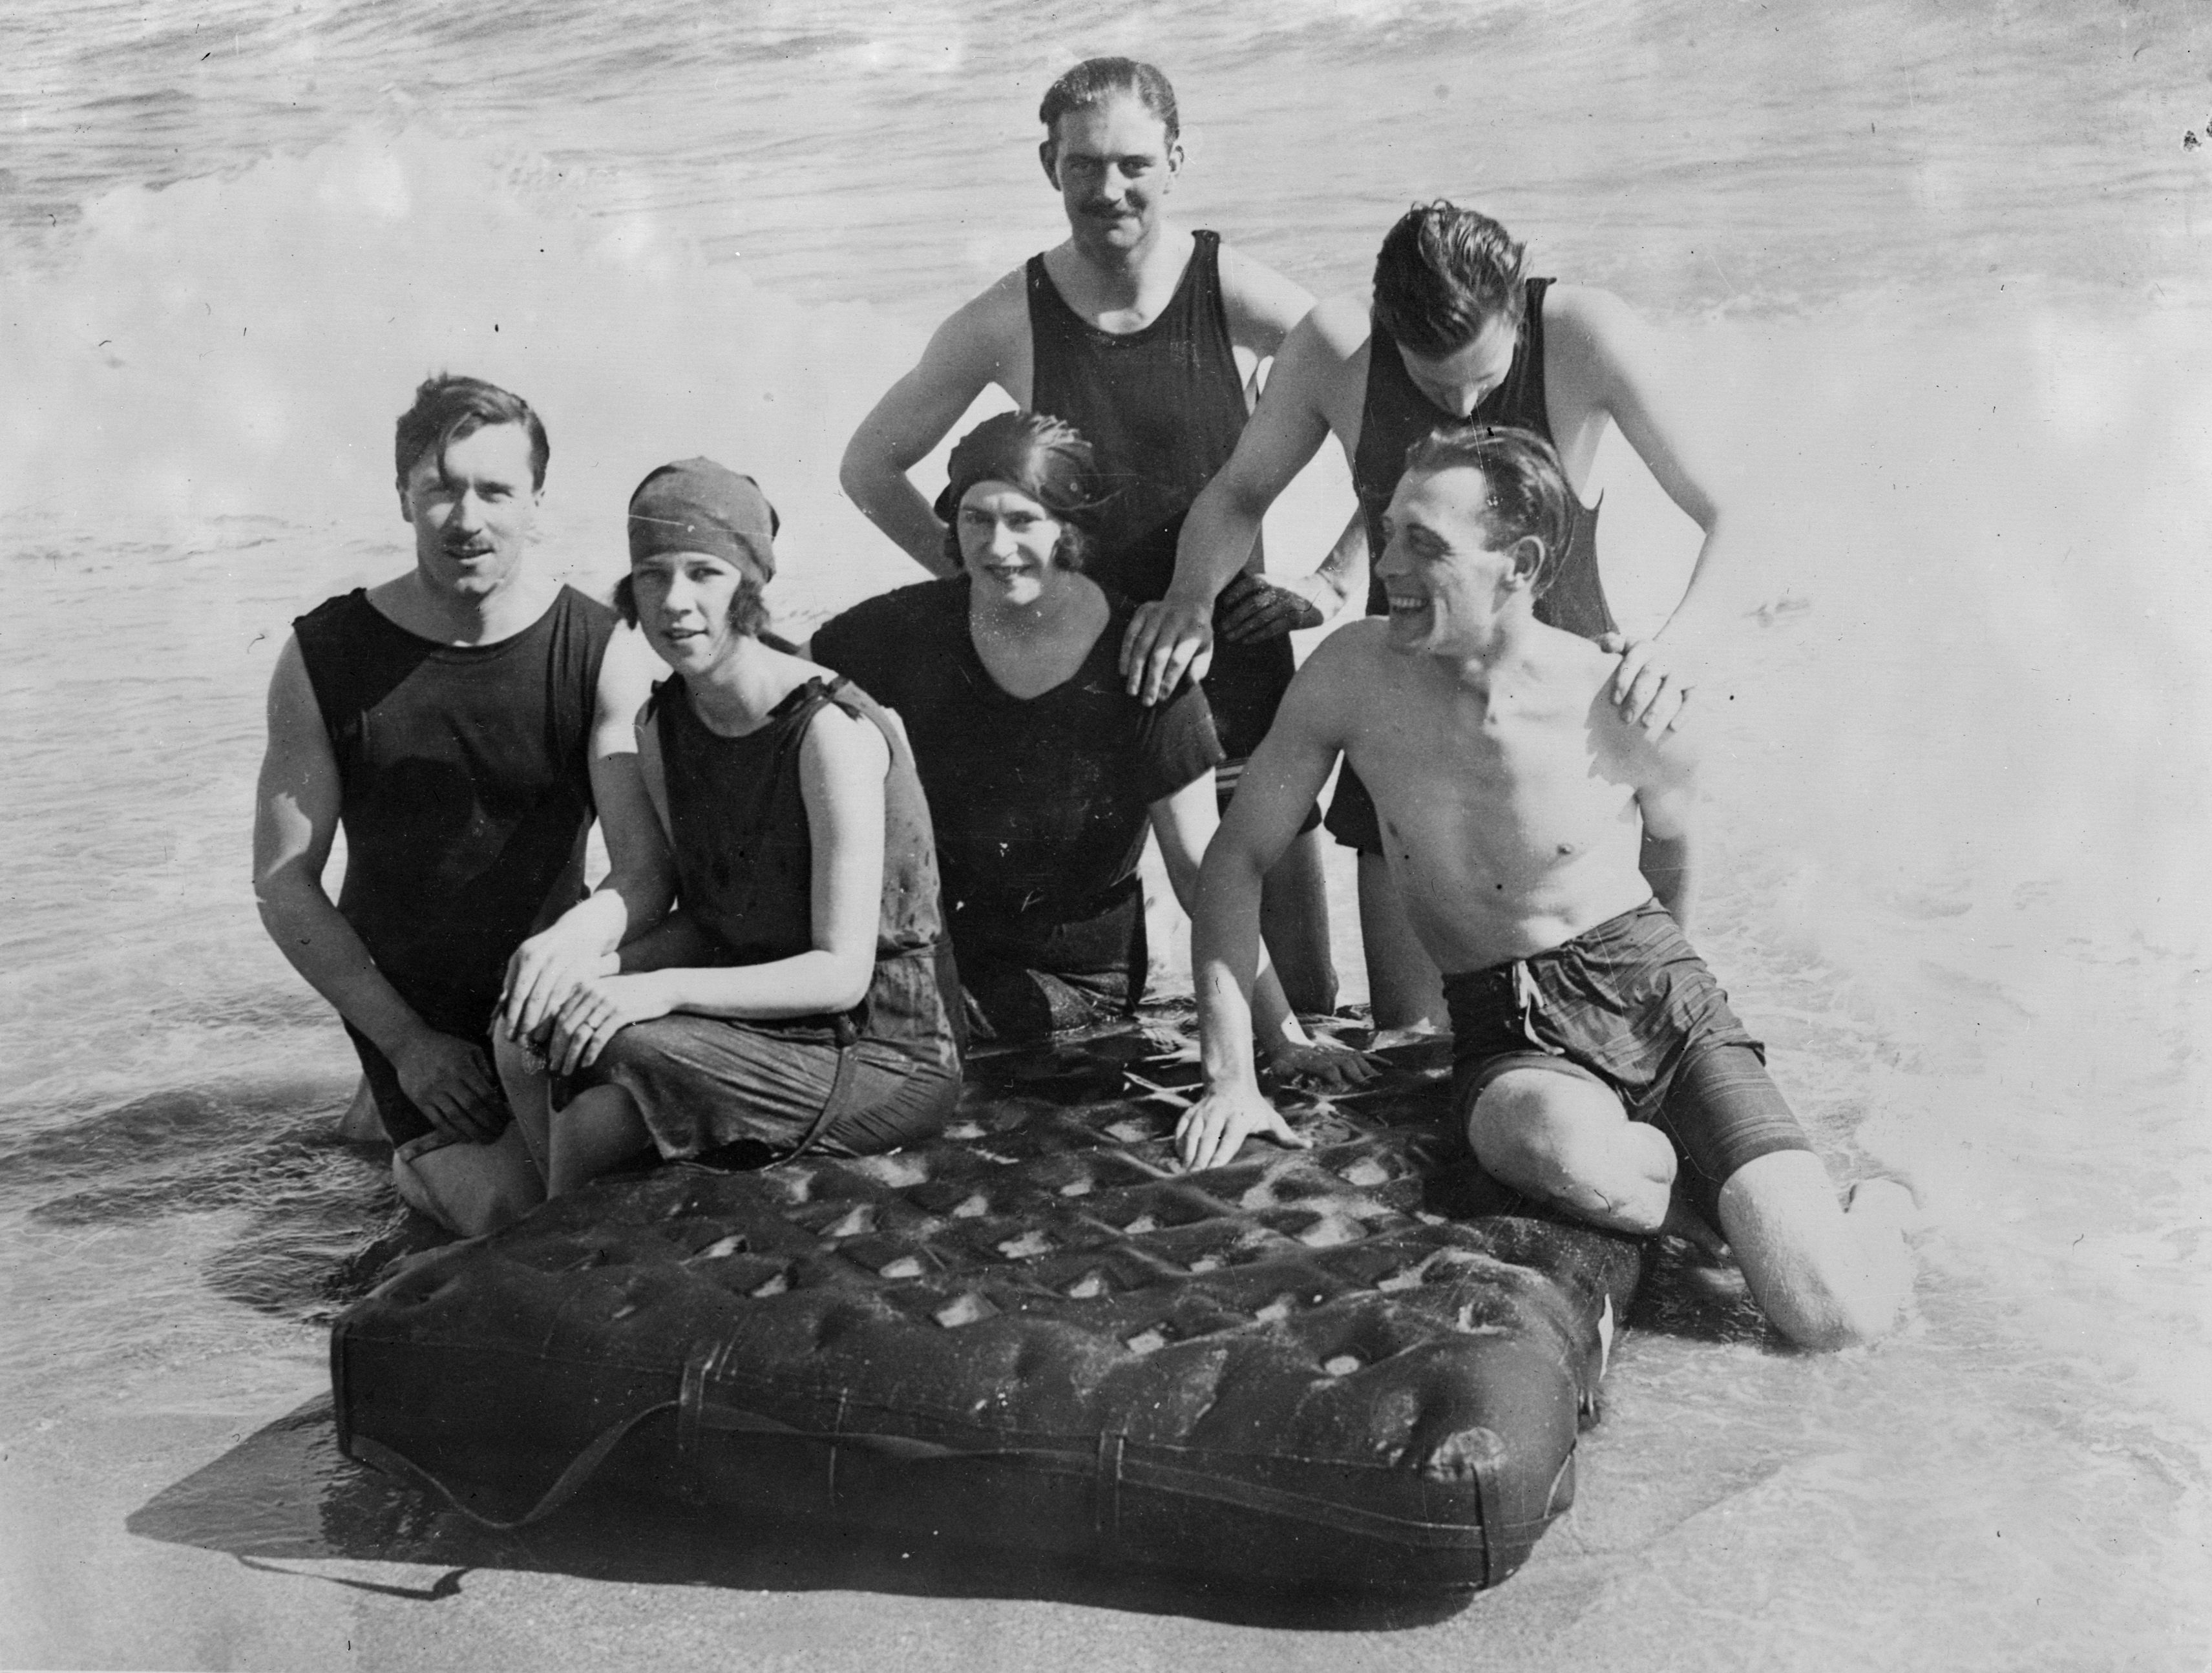 В 1920-е годы пляжный отдых стал веселым времяпрепровождением и даже светским событием. На берегу играли в бадминтон, а по воде передвигались на матрасах. Дресс-код трансформировался в сторону большей открытости: мужчины и женщины теперь носили короткие купальные комбинезоны